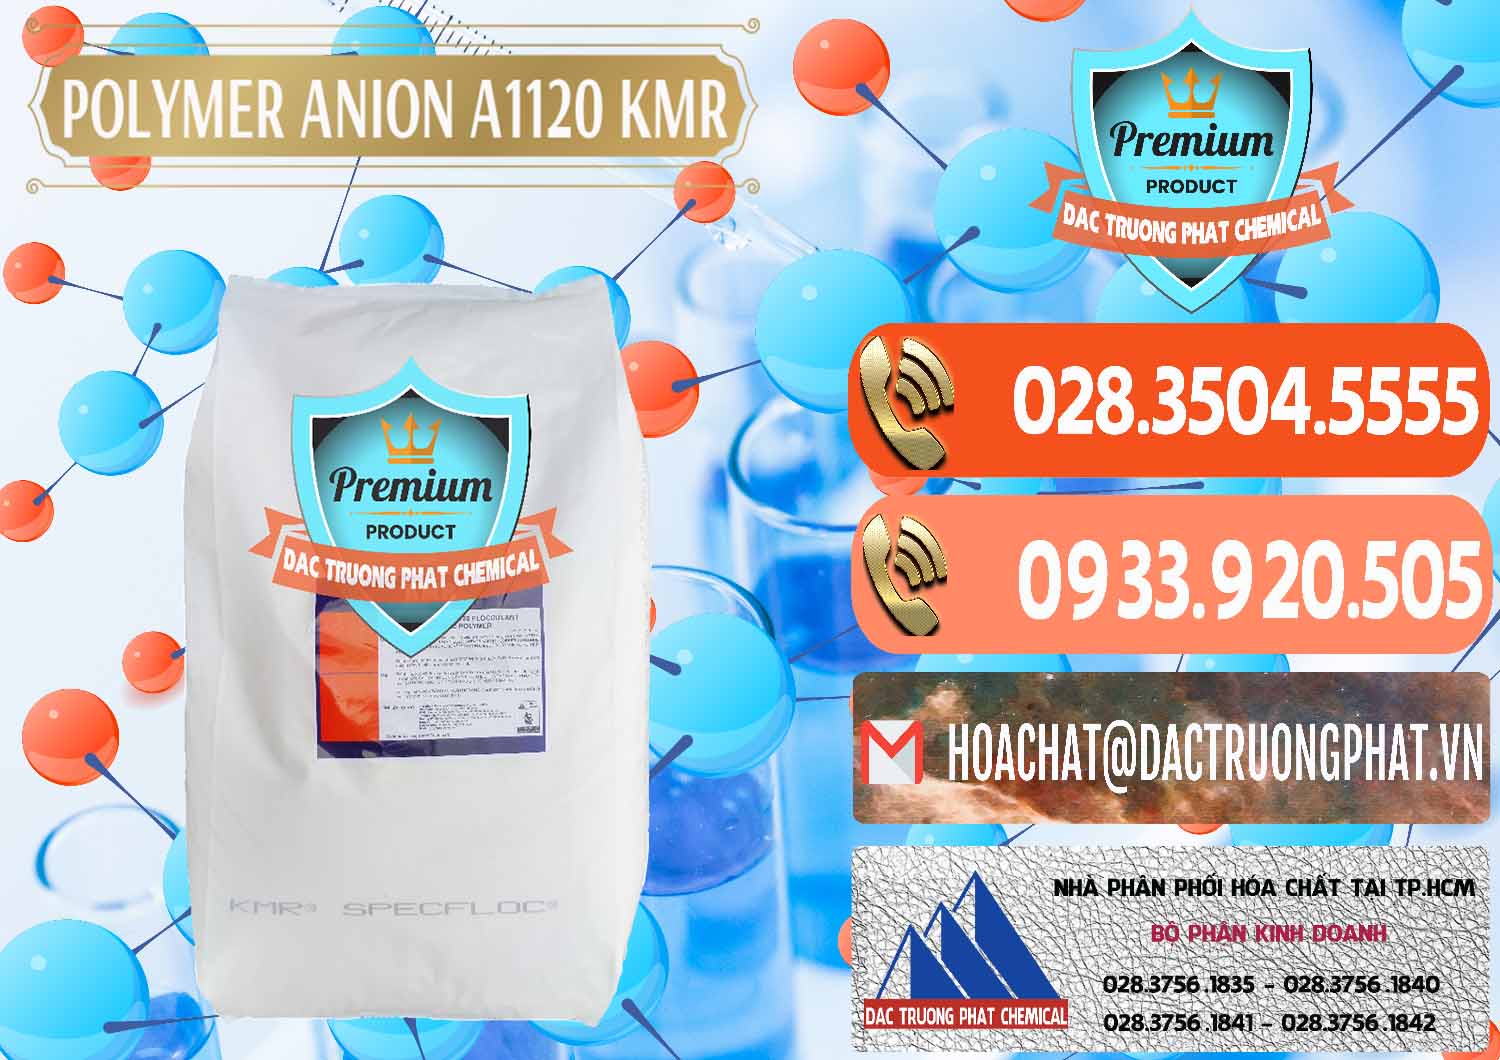 Nơi chuyên phân phối ( bán ) Polymer Anion A1120 - KMR Anh Quốc England - 0119 - Cty phân phối & cung cấp hóa chất tại TP.HCM - hoachatmientay.com